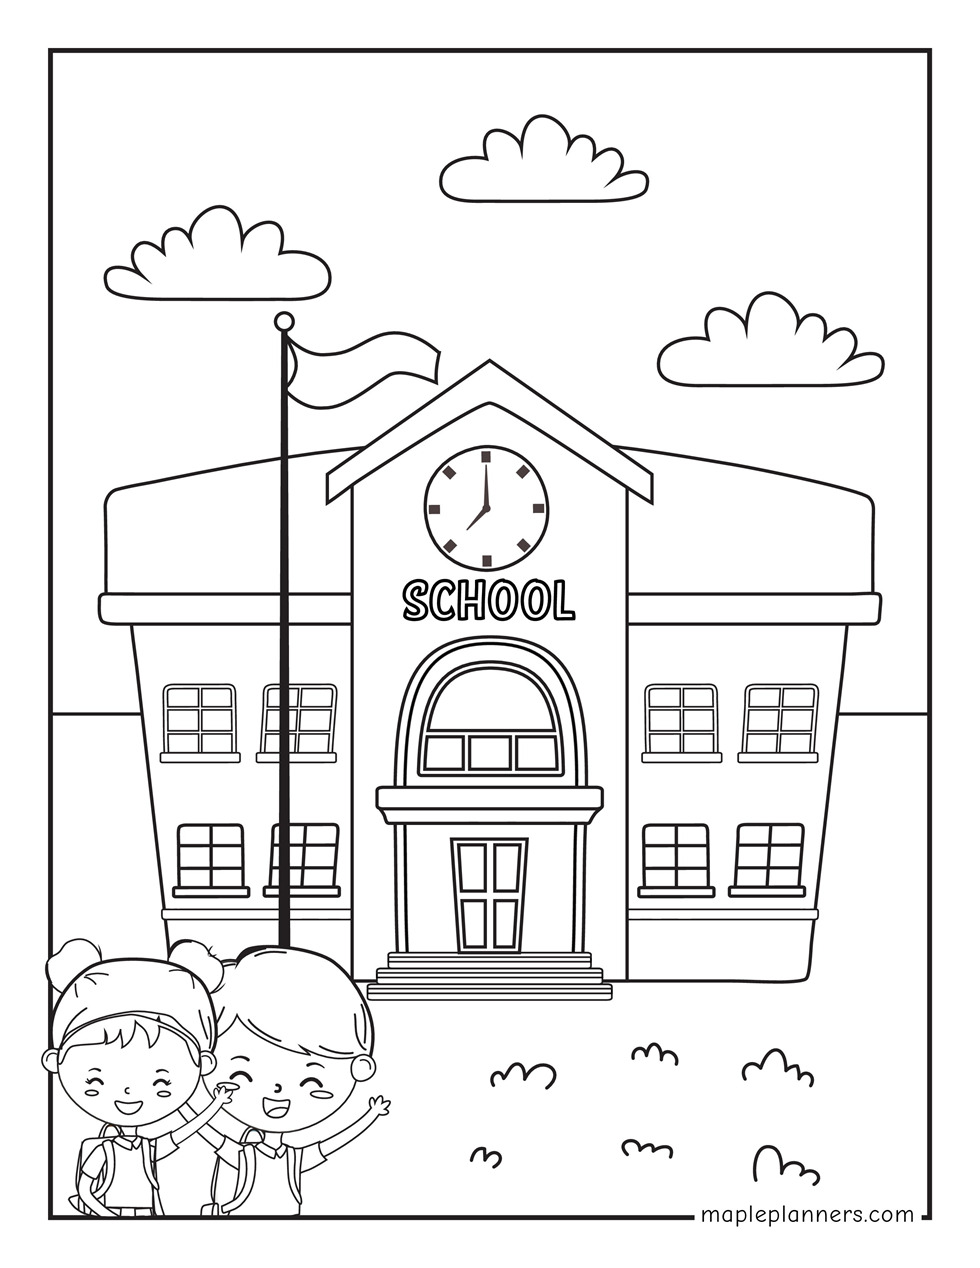 School Building Coloring Page Printable